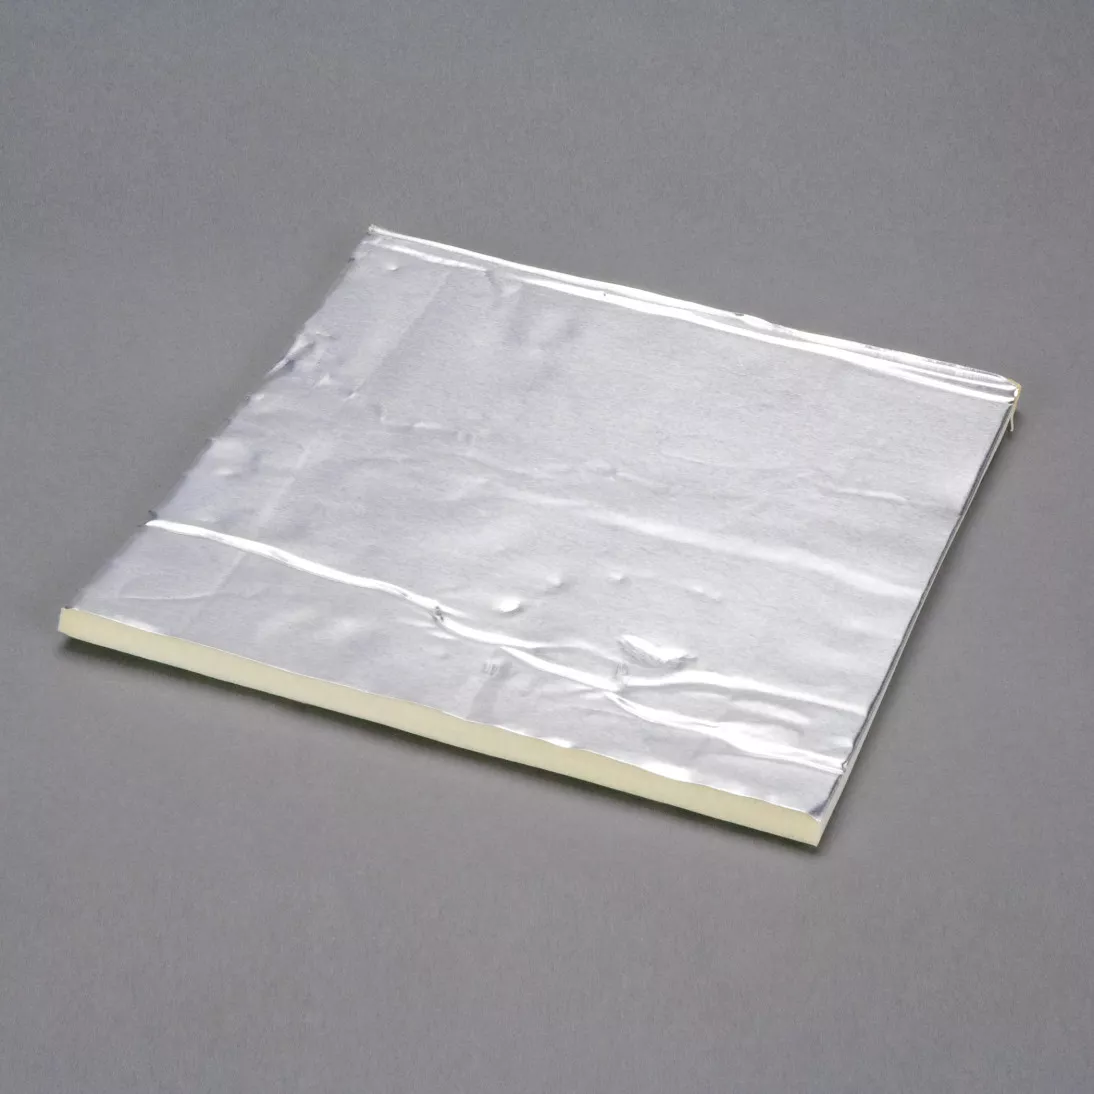 3M™ Damping Aluminum Foam Sheets 4014, Silver, 6 in x 48 in, 250 mil, 1
pack per case (50 sheets per case)